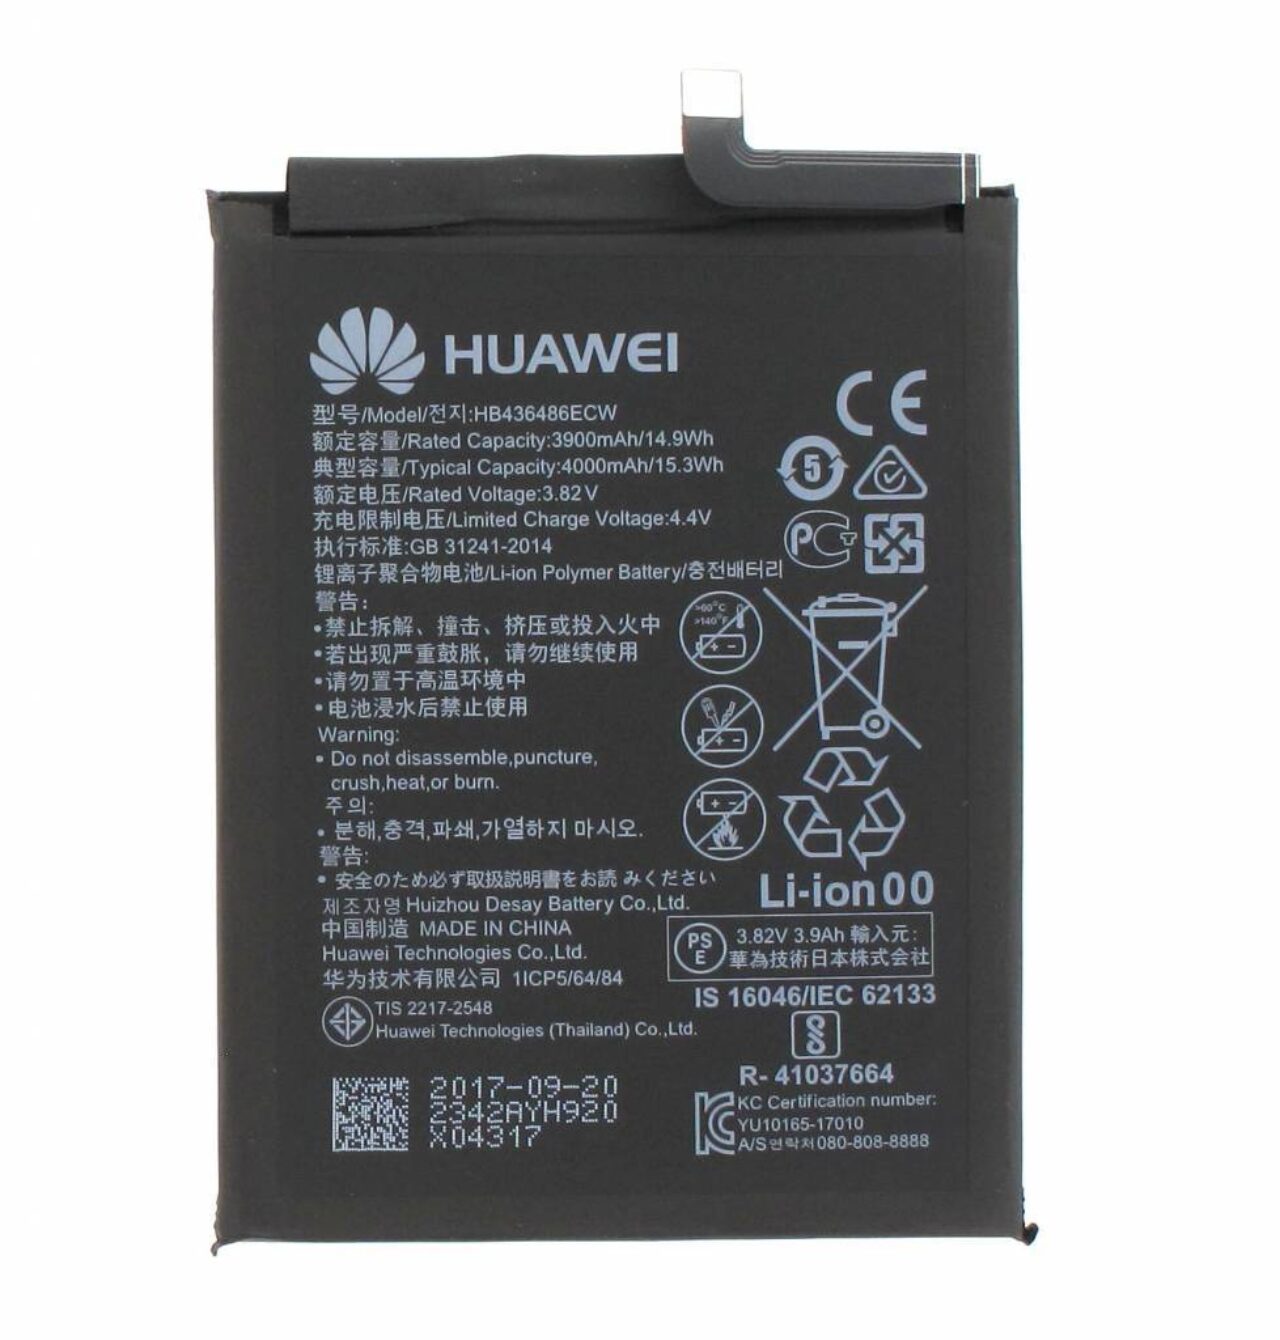 Huawei battery hb436486ecw 4000mah 24022342